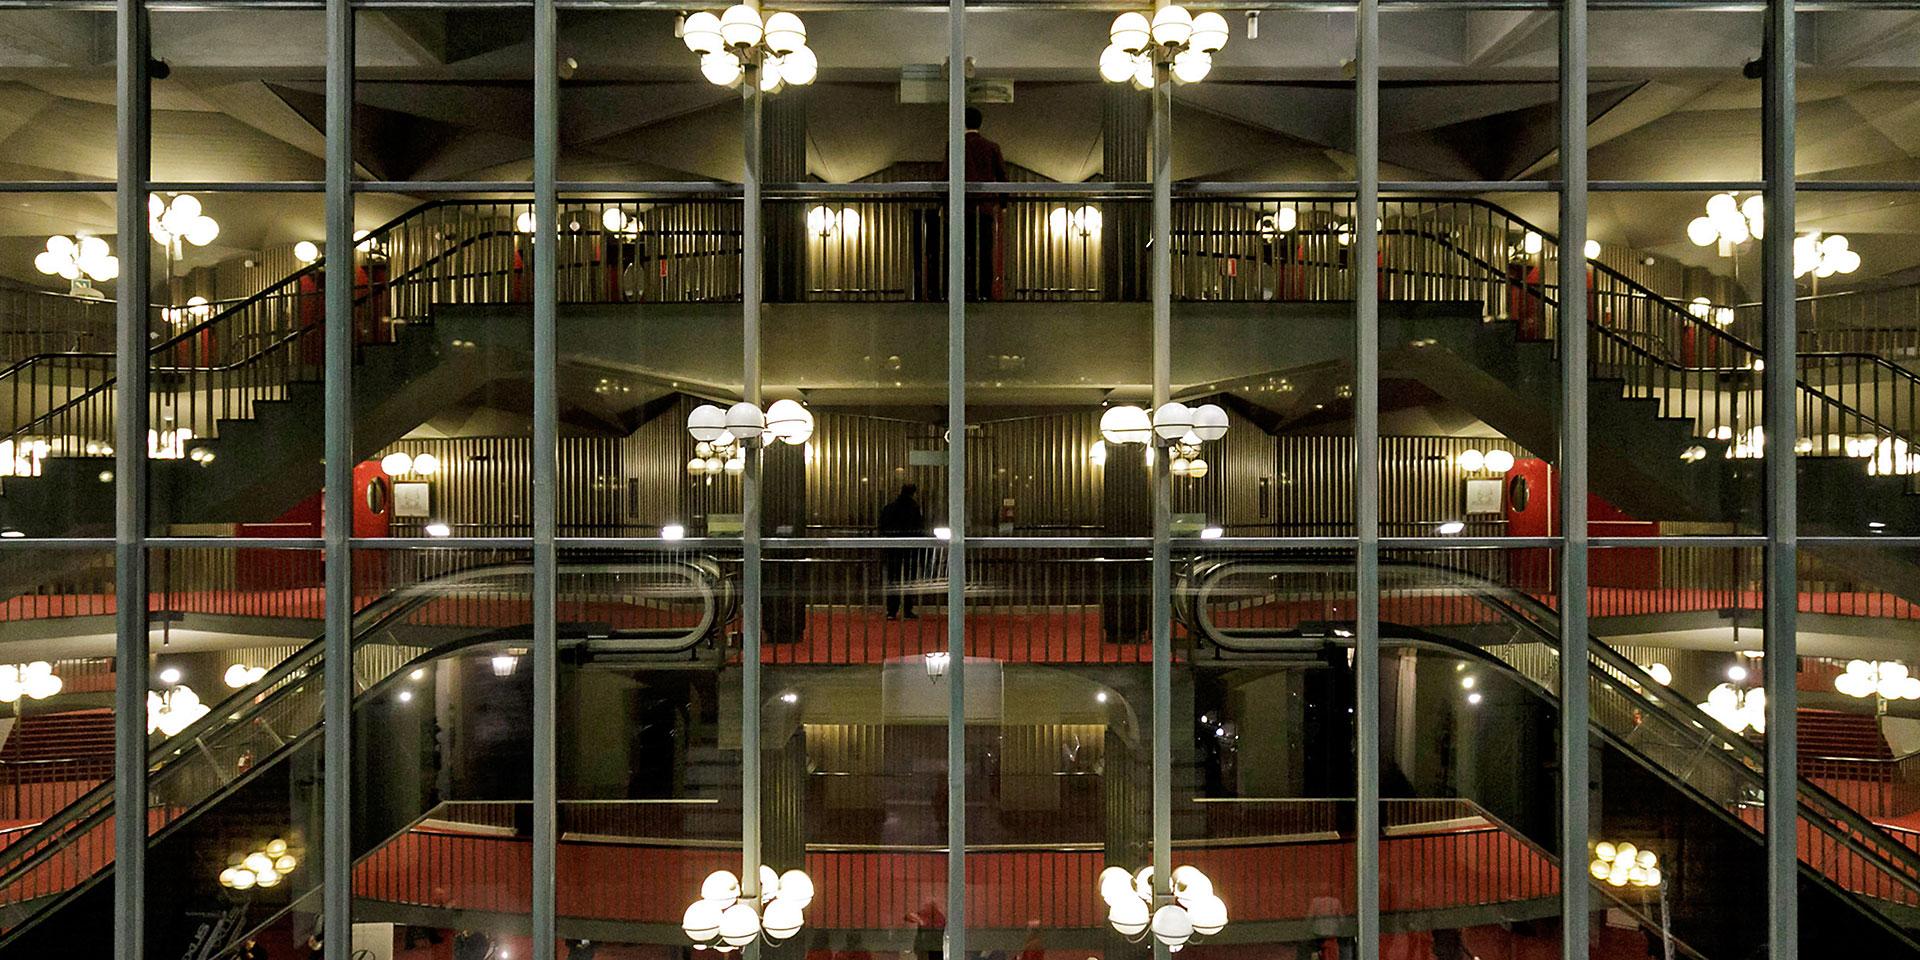 Le scale mobili nel foyer del Teatro Regio